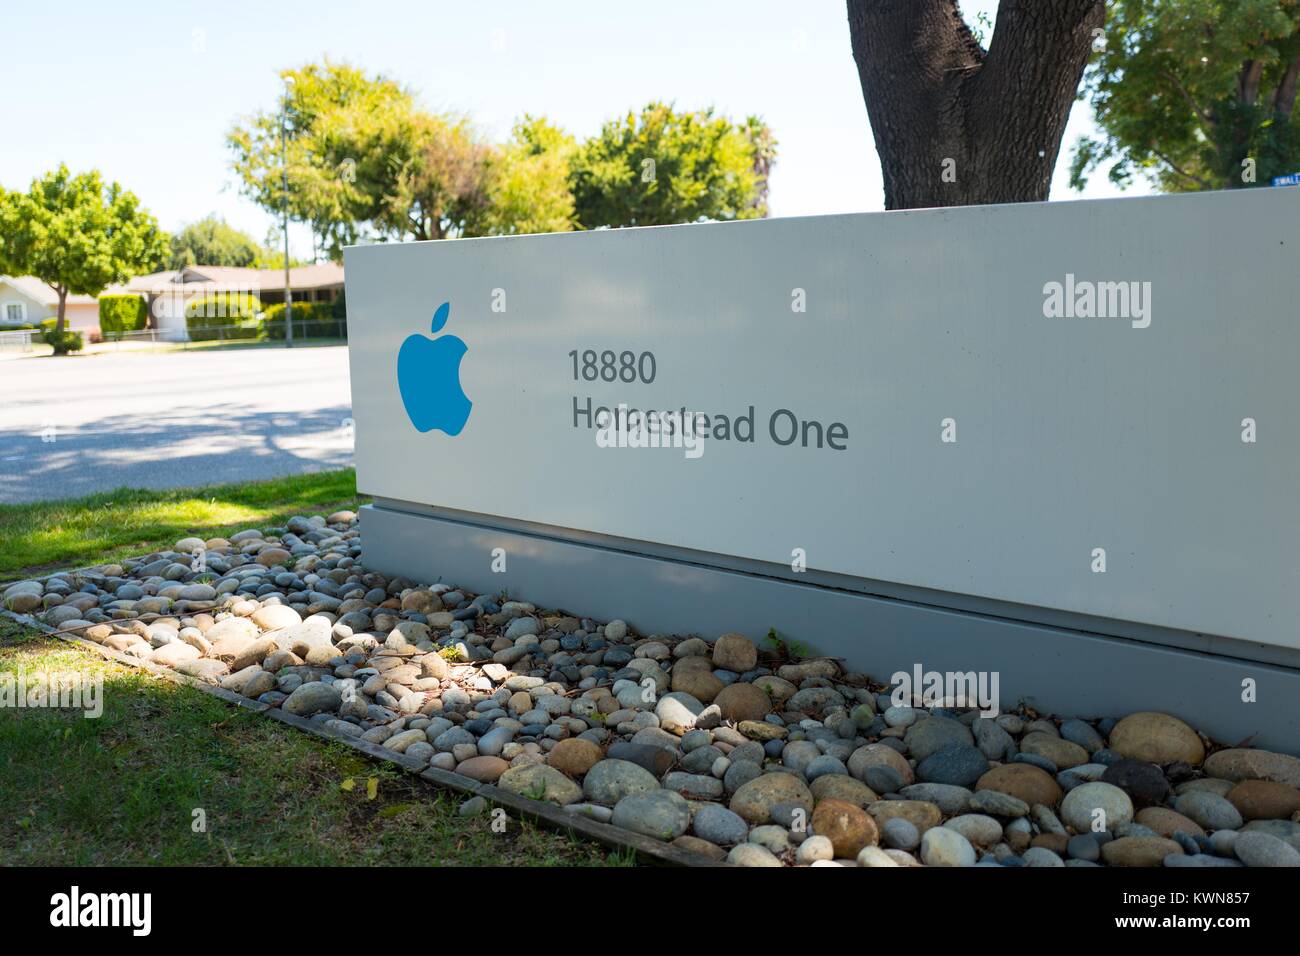 Beschilderung mit Apple Inc Logo für das Gehöft ein Büro in der Nähe des Apple Park, umgangssprachlich als "Raumschiff", die neue Zentrale von Apple Inc. in den Silicon Valley Stadt Cupertino, Kalifornien, 25. Juli 2017 bekannt. Stockfoto